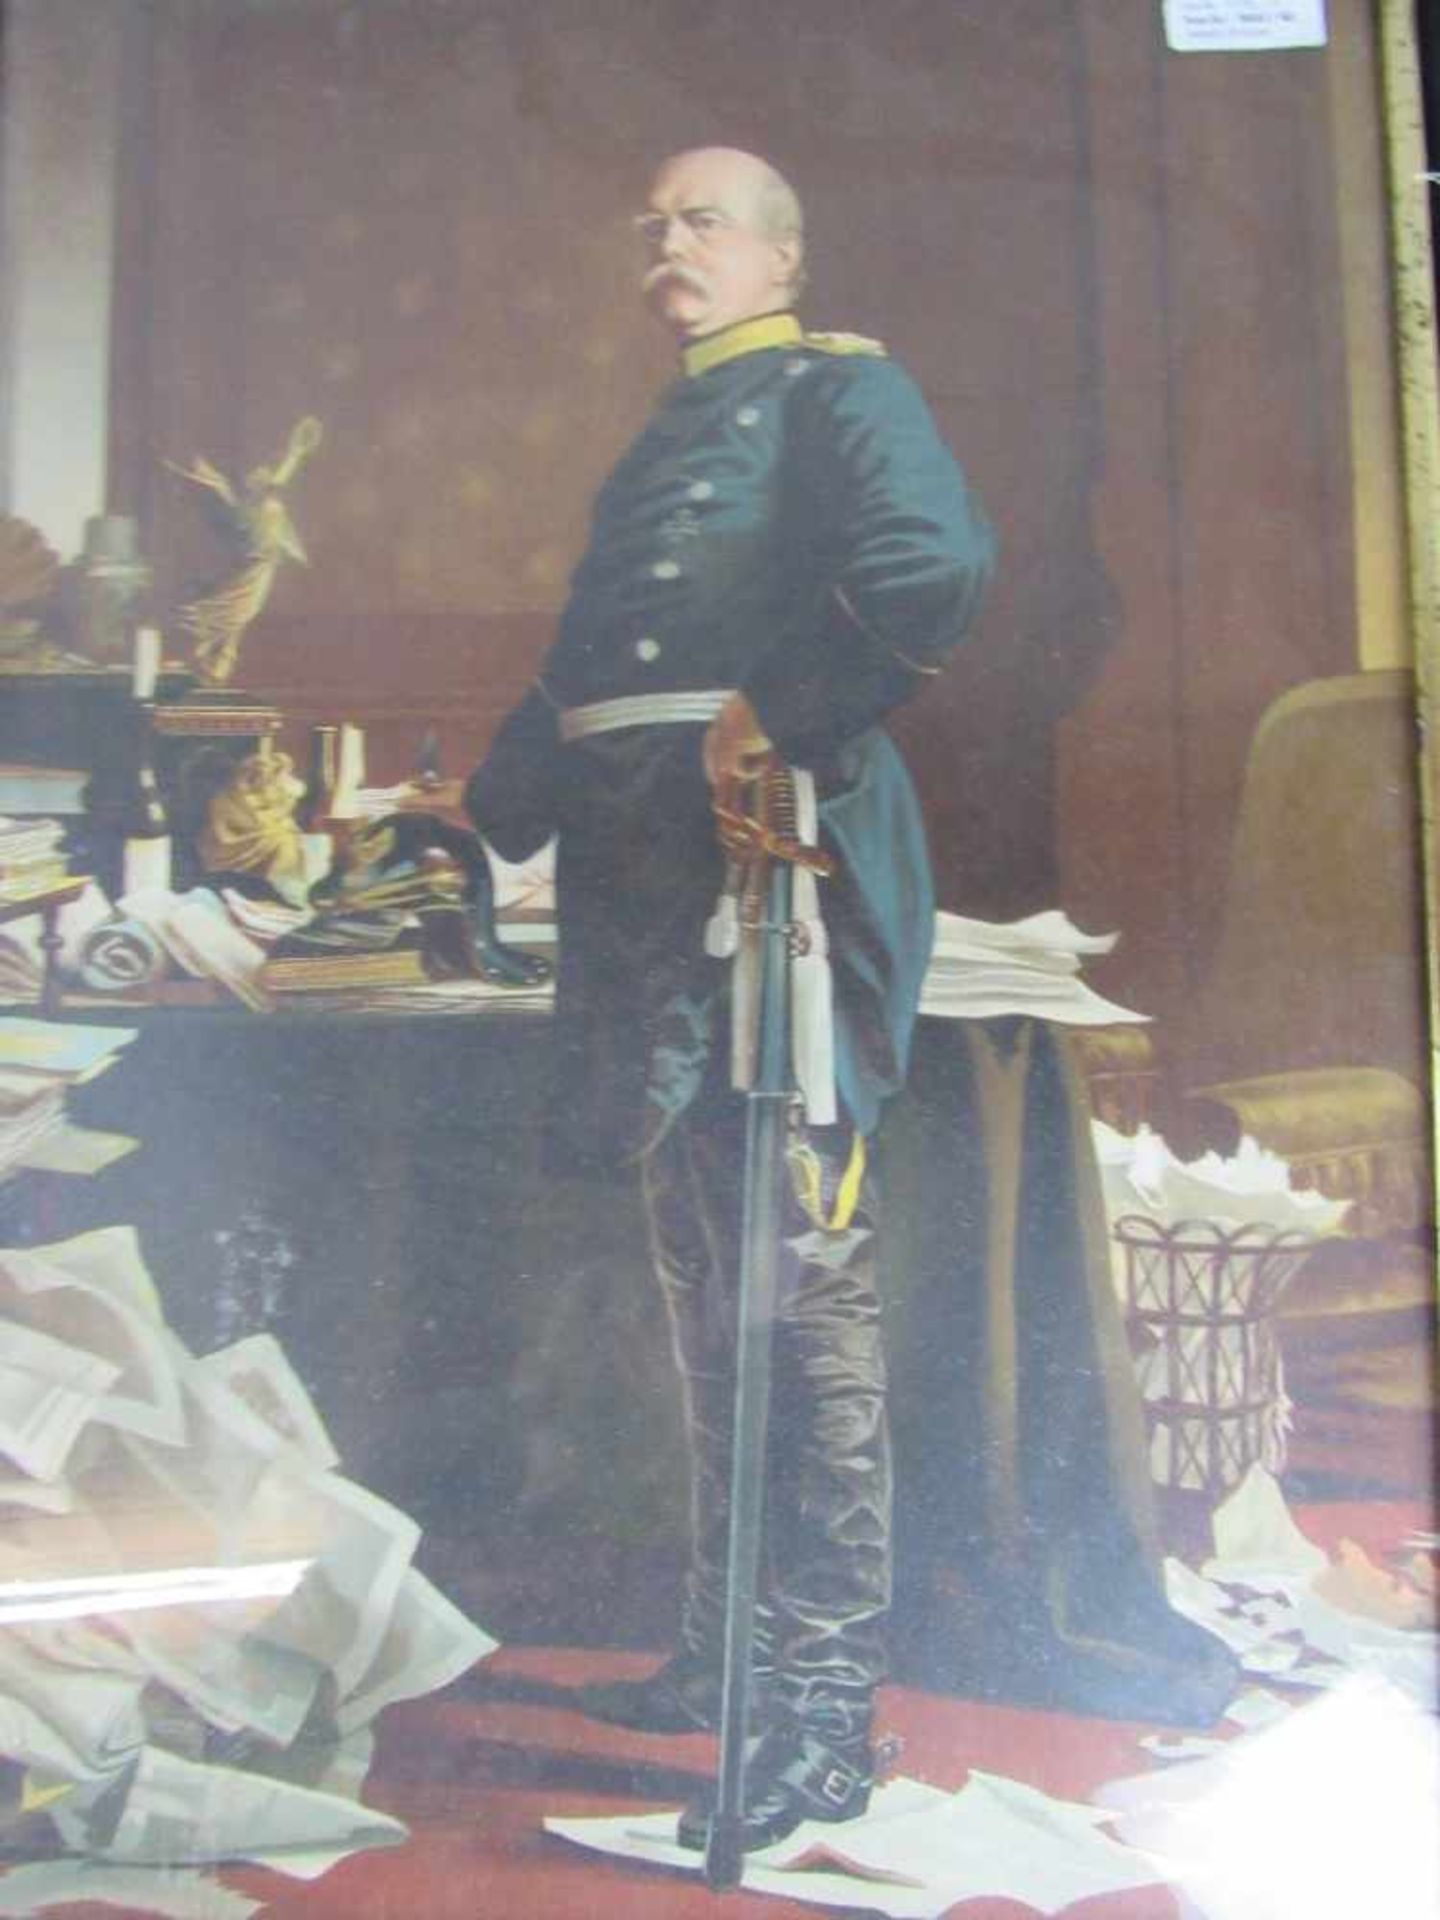 Militärisches Bild Kunstdruck Darstellung Bismarck unten rechts monogrammiert AVW. 1879 70x53cm